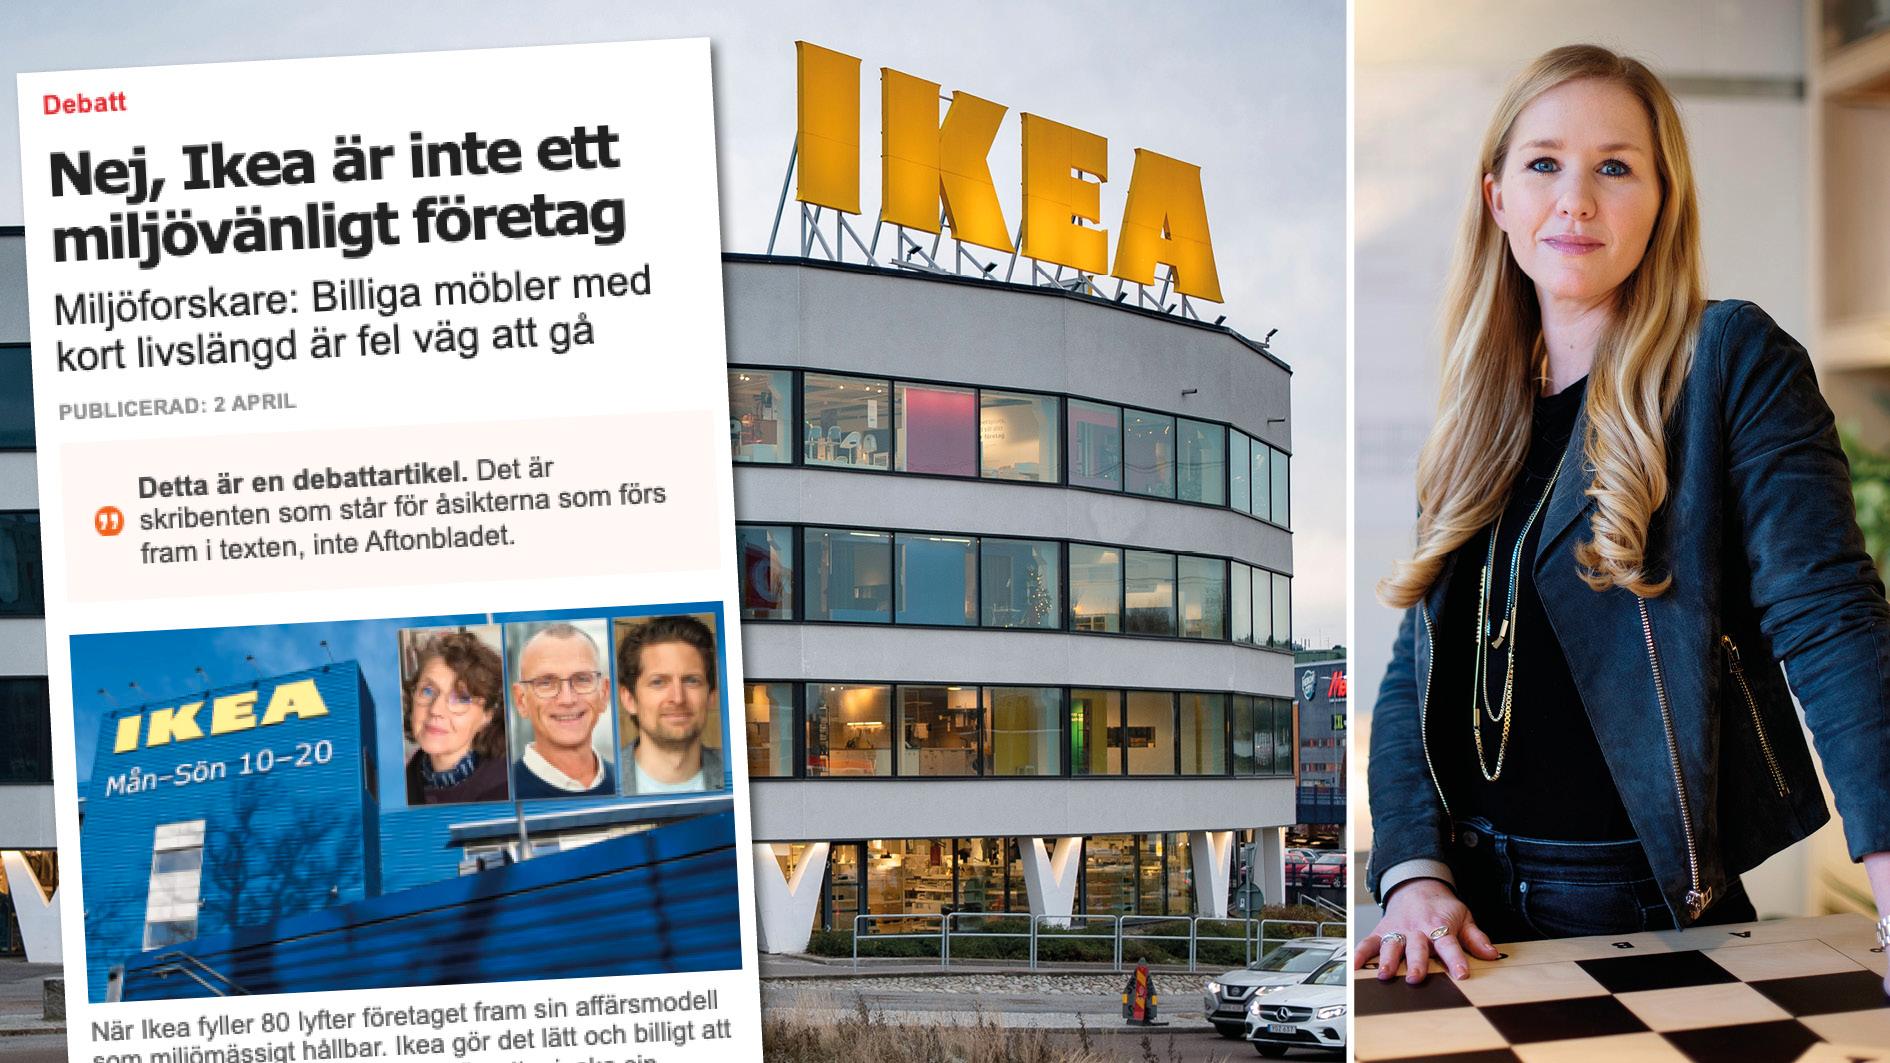 Vi är inte perfekta, men Ikea vill vara en del av omställningen till ett mer hållbart samhälle. Medvetna om vårt klimatfotavtryck tar vi som globalt företag vårt ansvar. Replik från Johanna Nordell, hållbarhetschef.